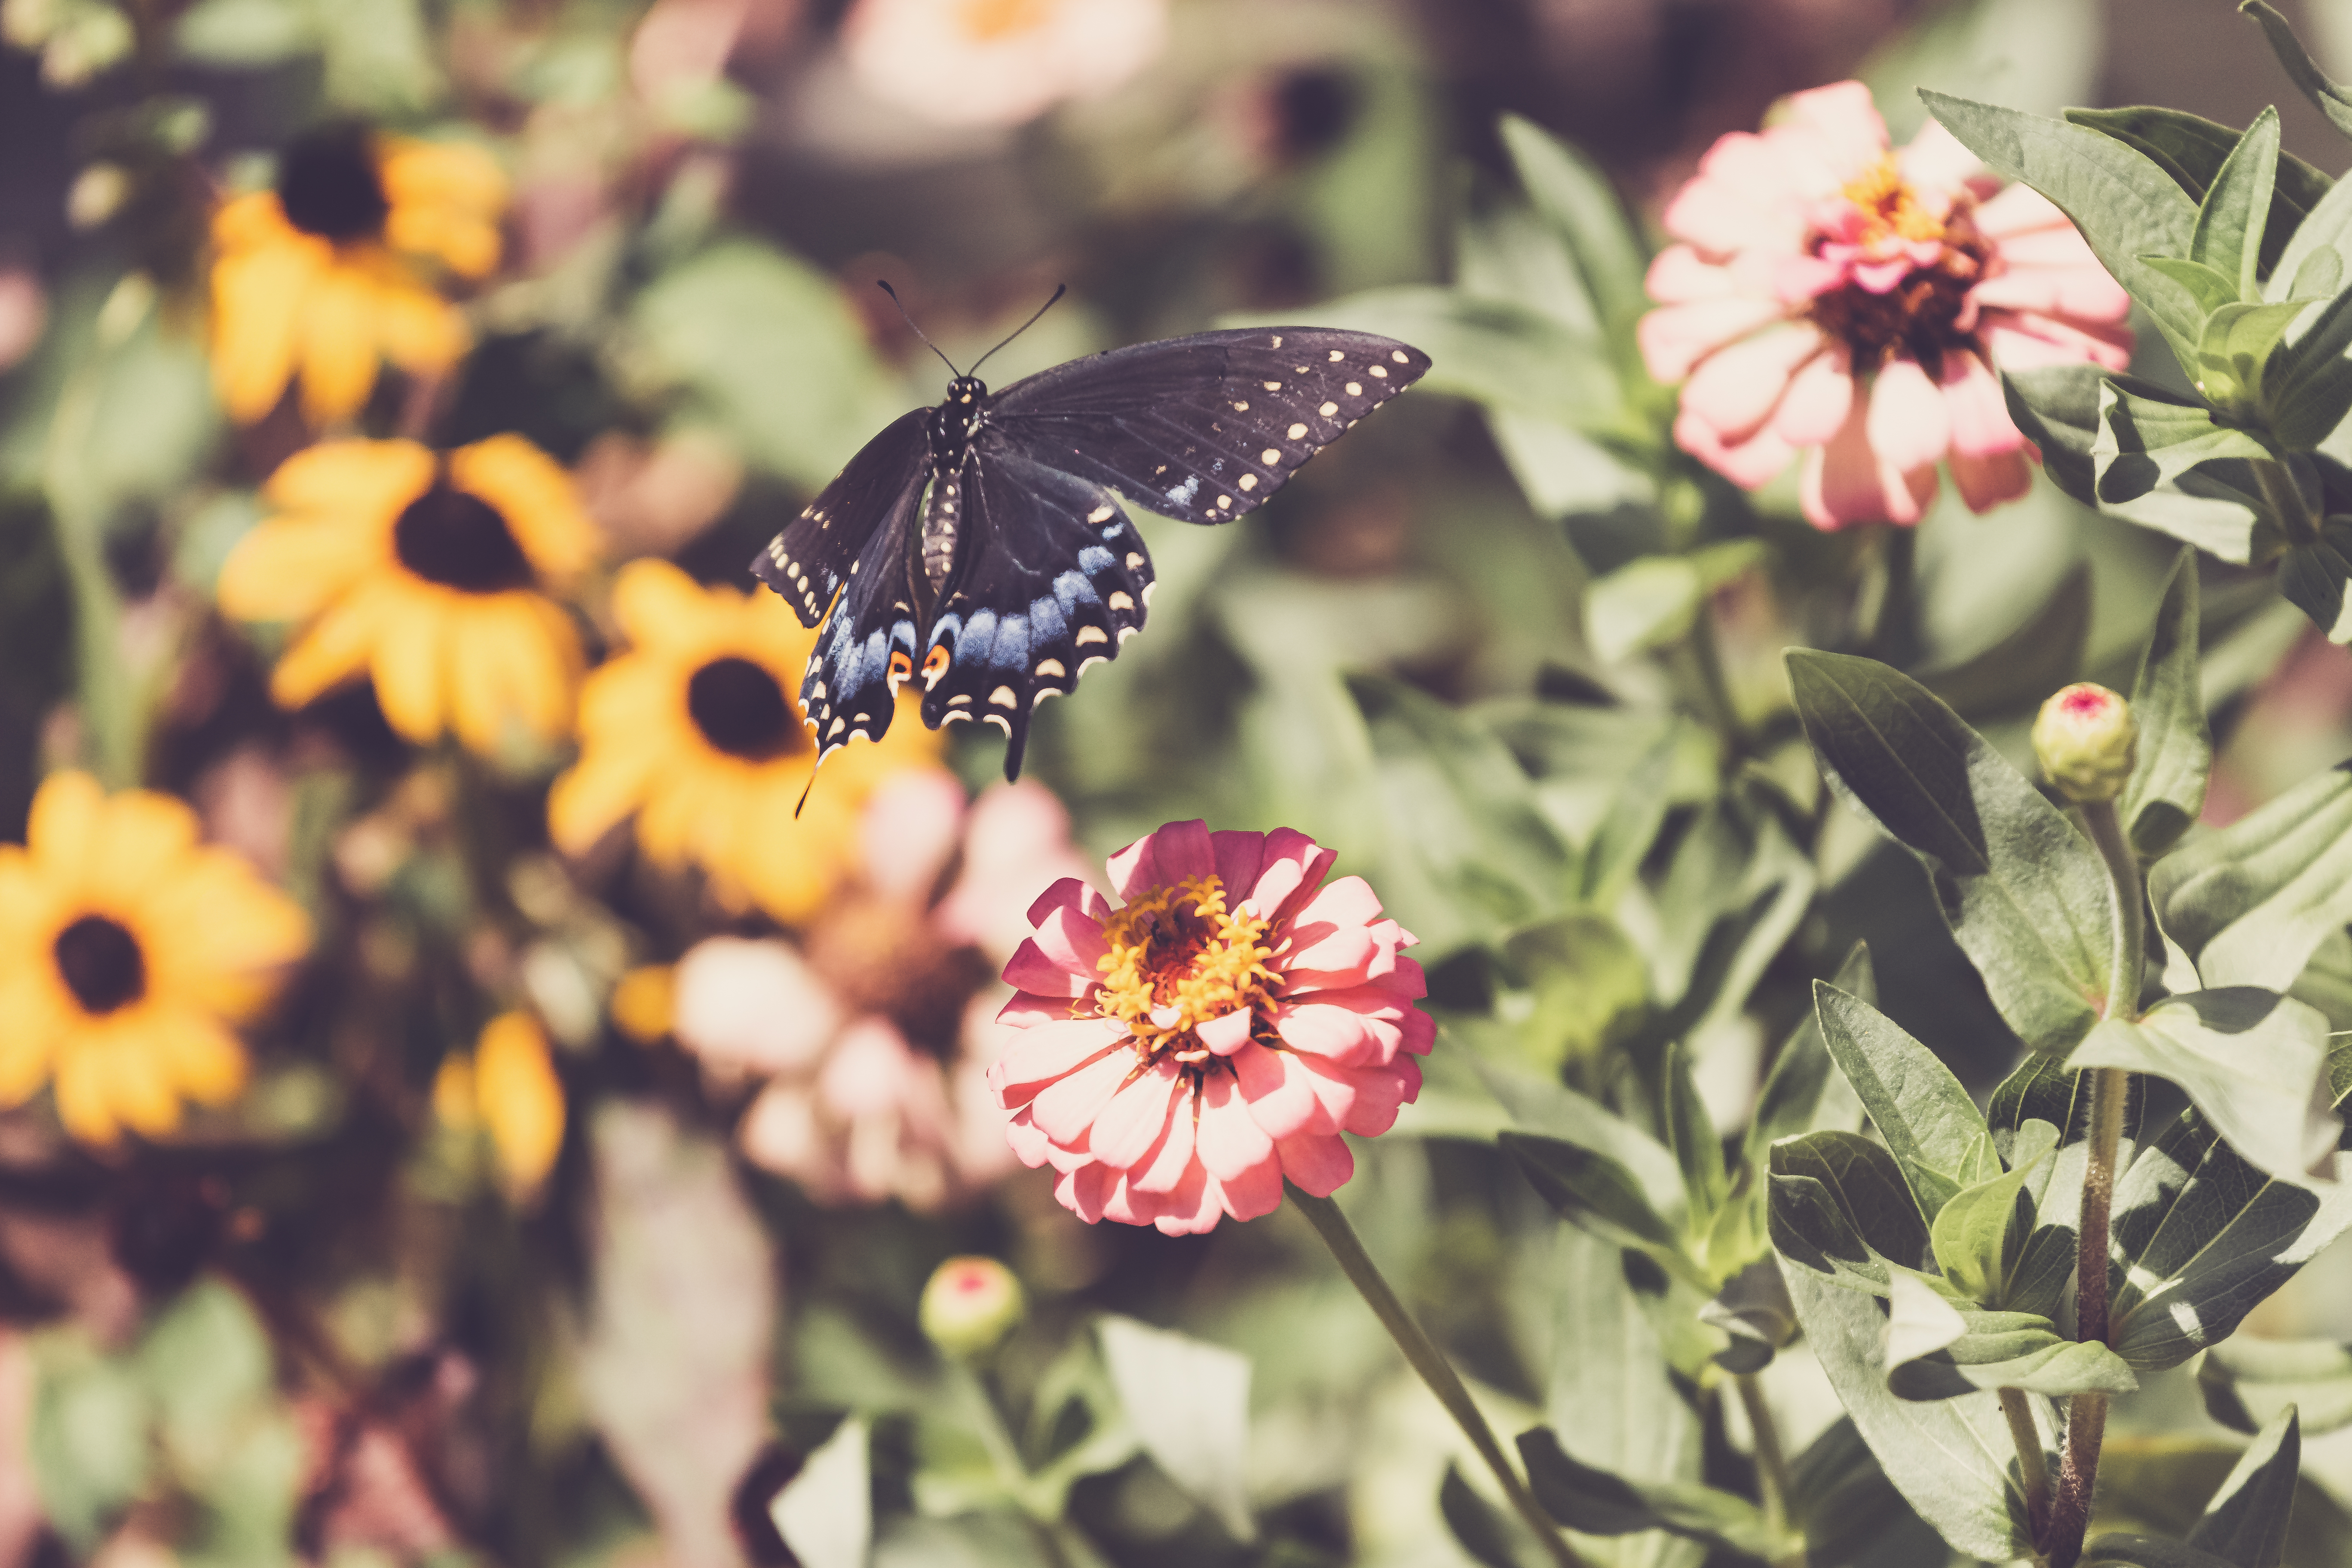 一只黑色蝴蝶落在一朵粉色花朵上。